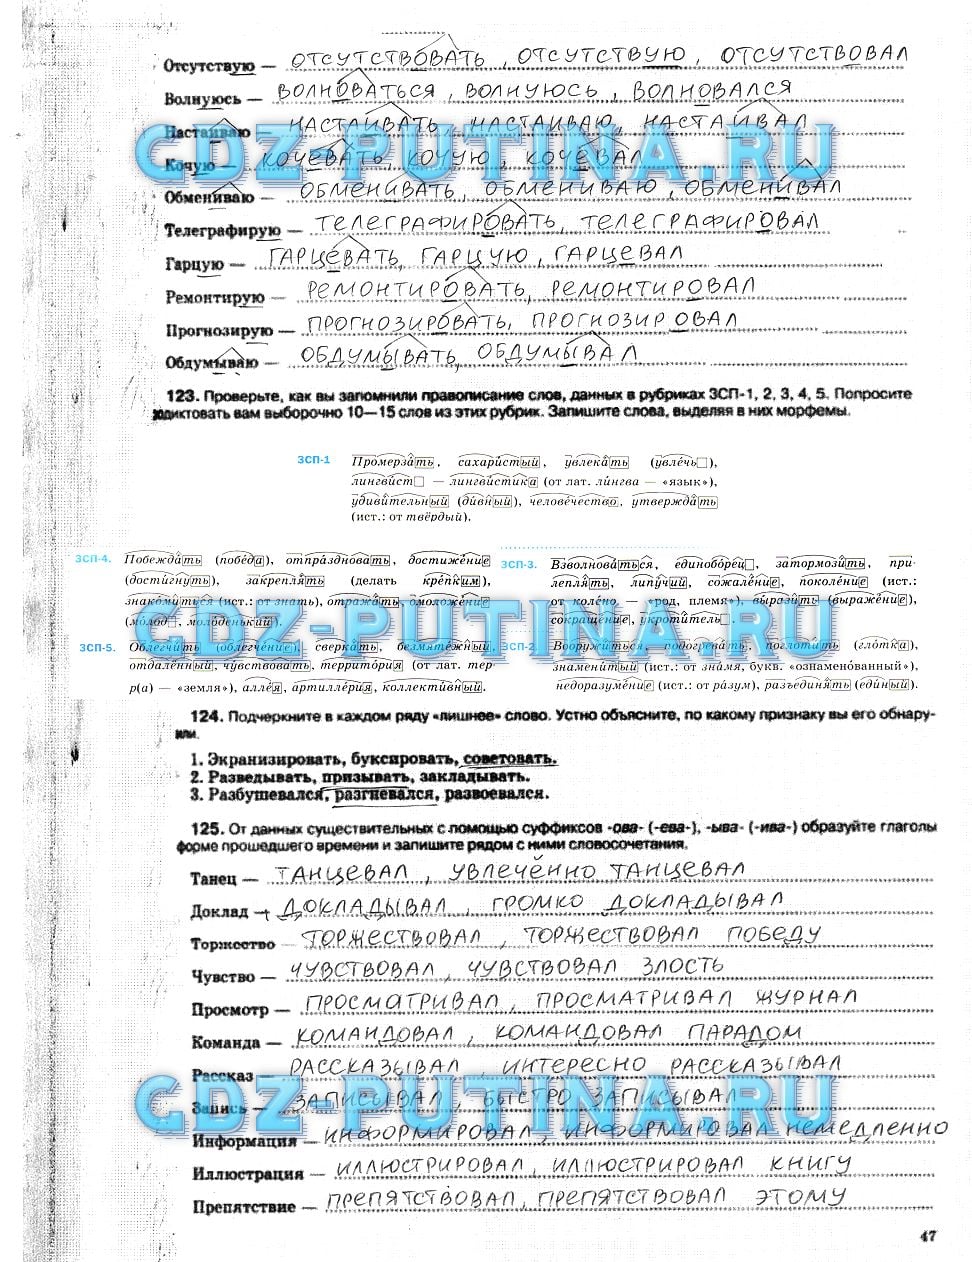 гдз 5 класс рабочая тетрадь страница 47 русский язык Ларионова